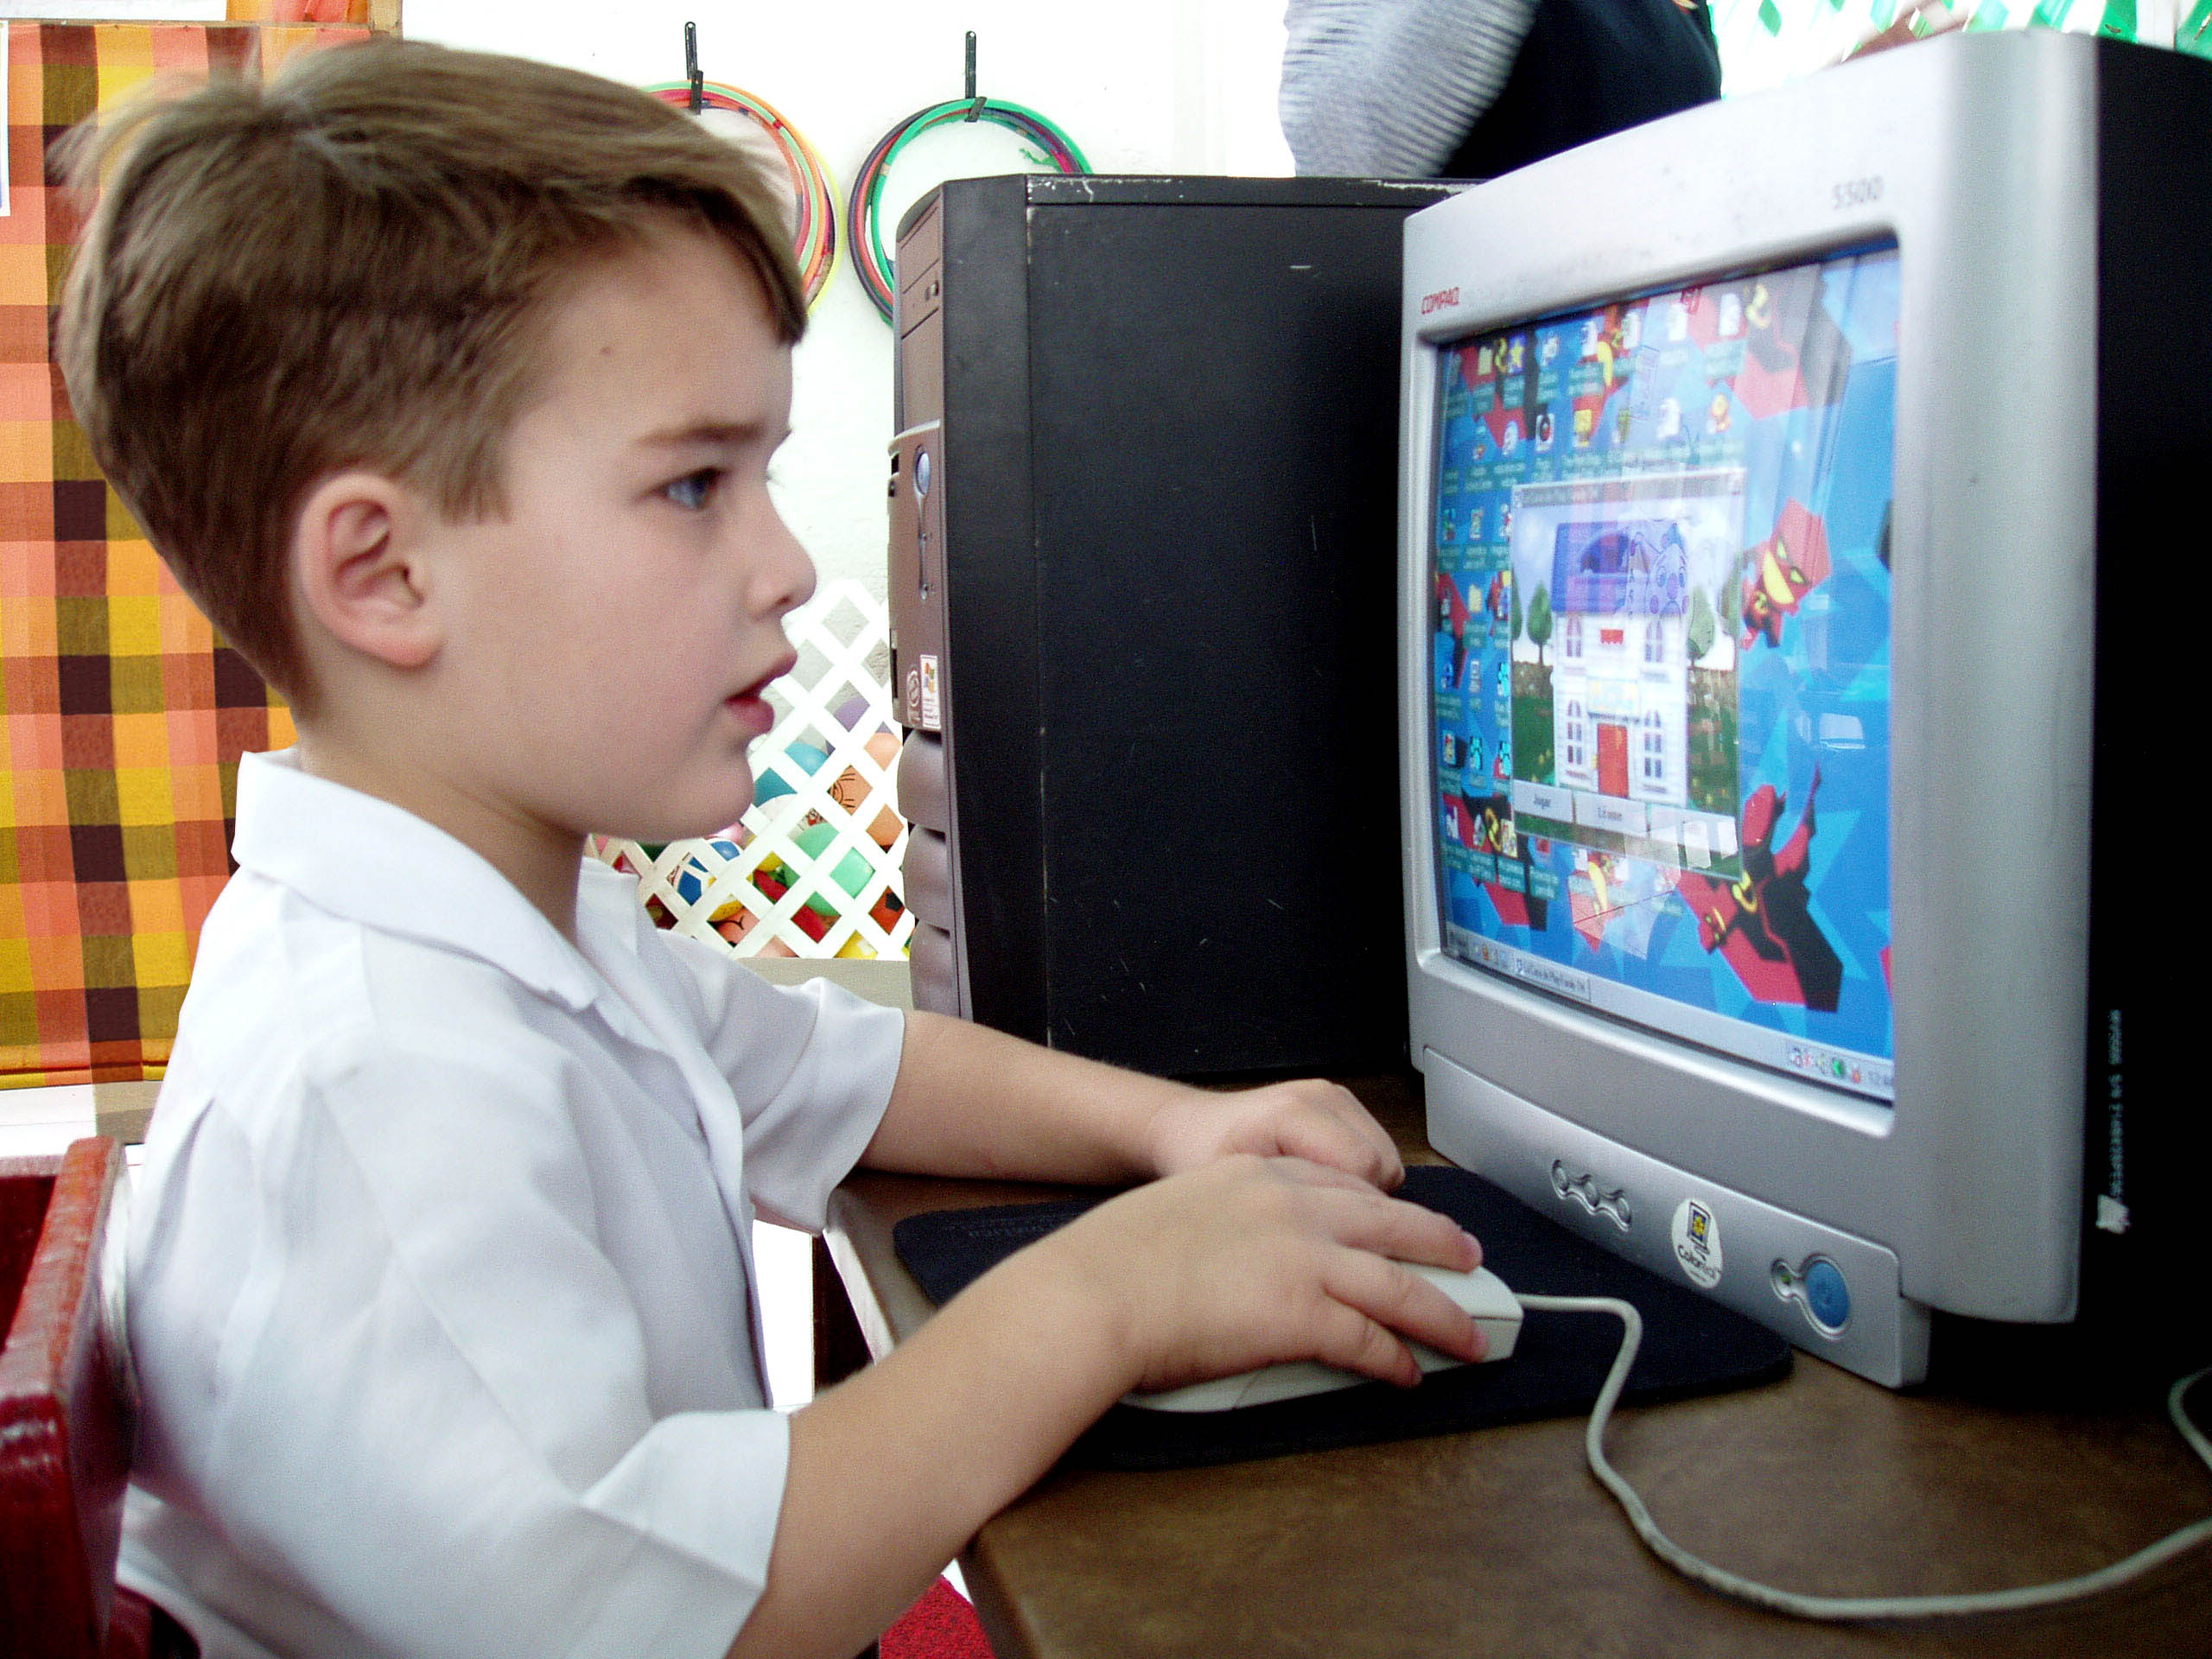 Влияние компьютерных игр на детей